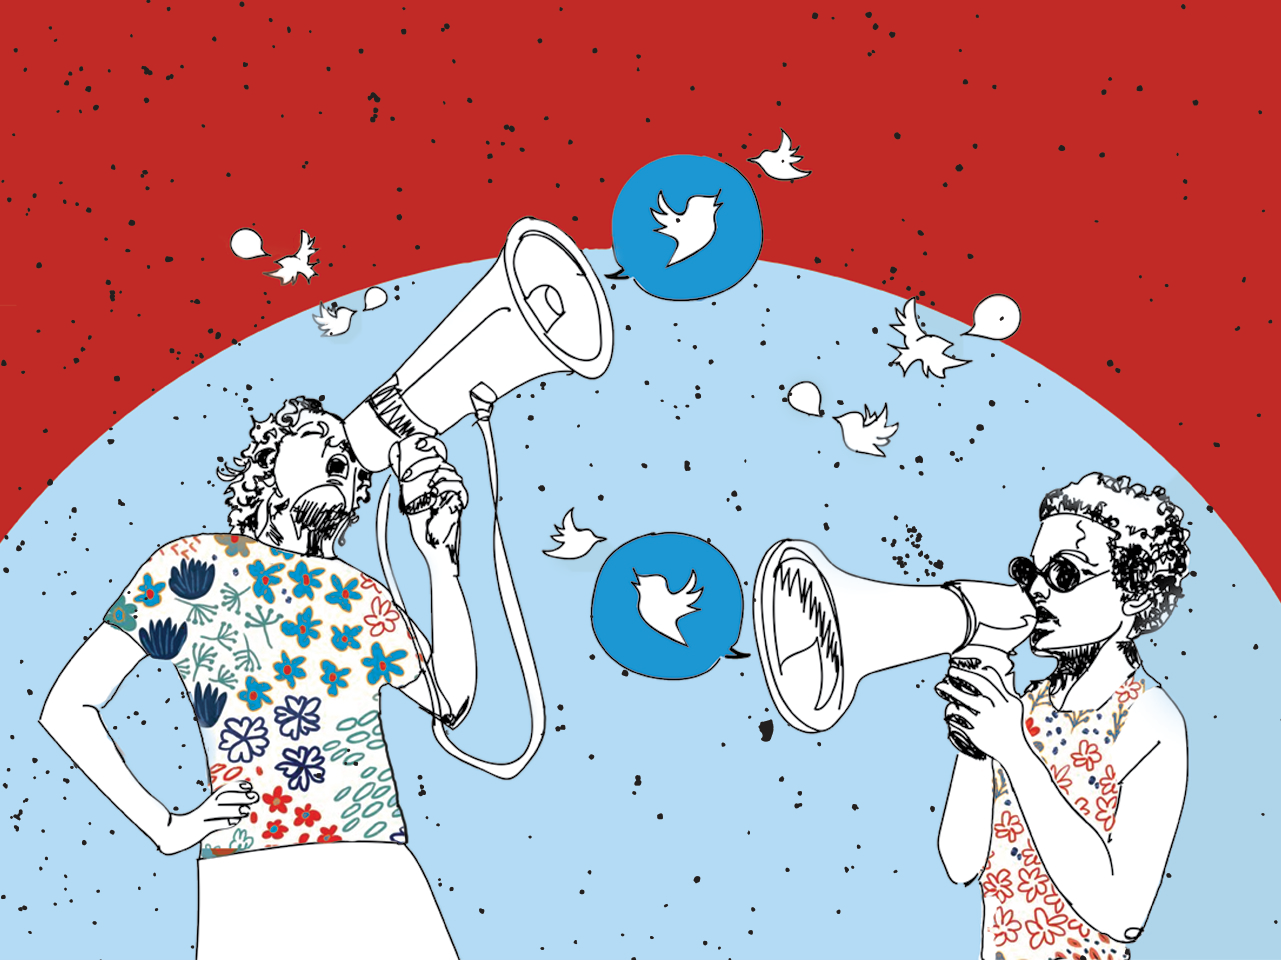 Co-fundador do Twitter lamenta papel da rede na internet